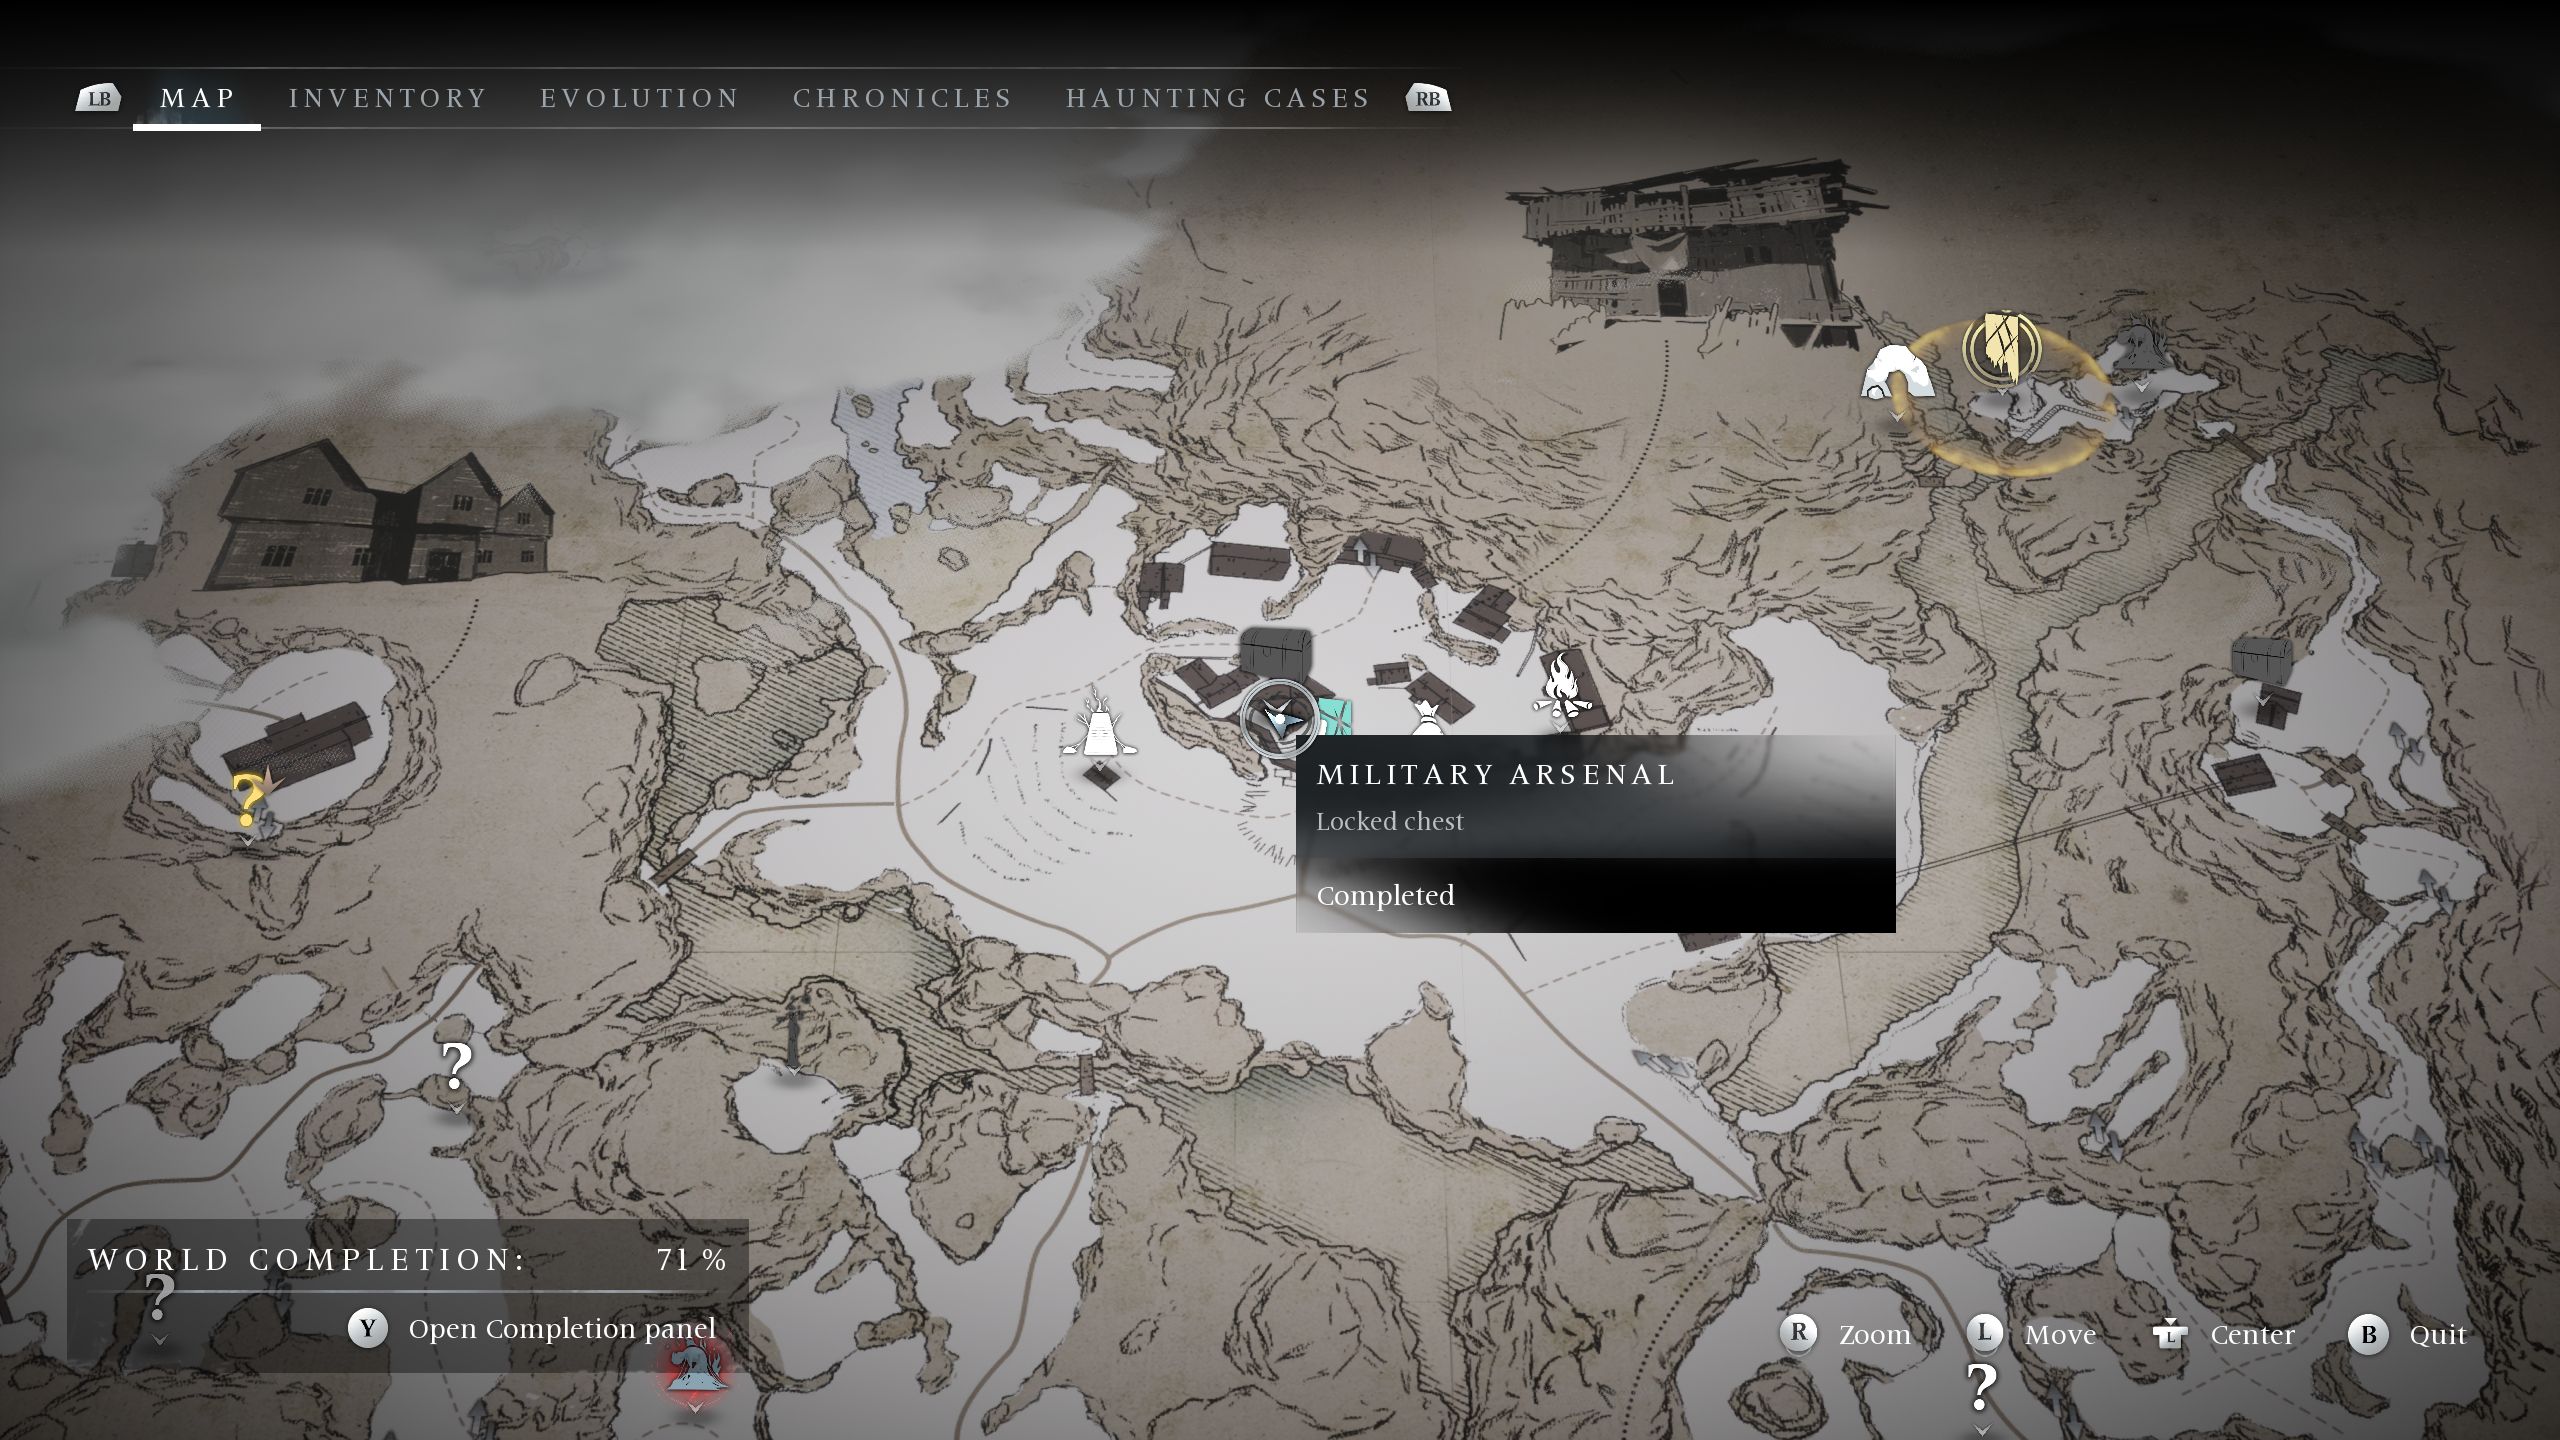 Una imagen de mapa que muestra la ubicación del cofre del Arsenal Militar bloqueado - Banishers Ghosts of New Eden